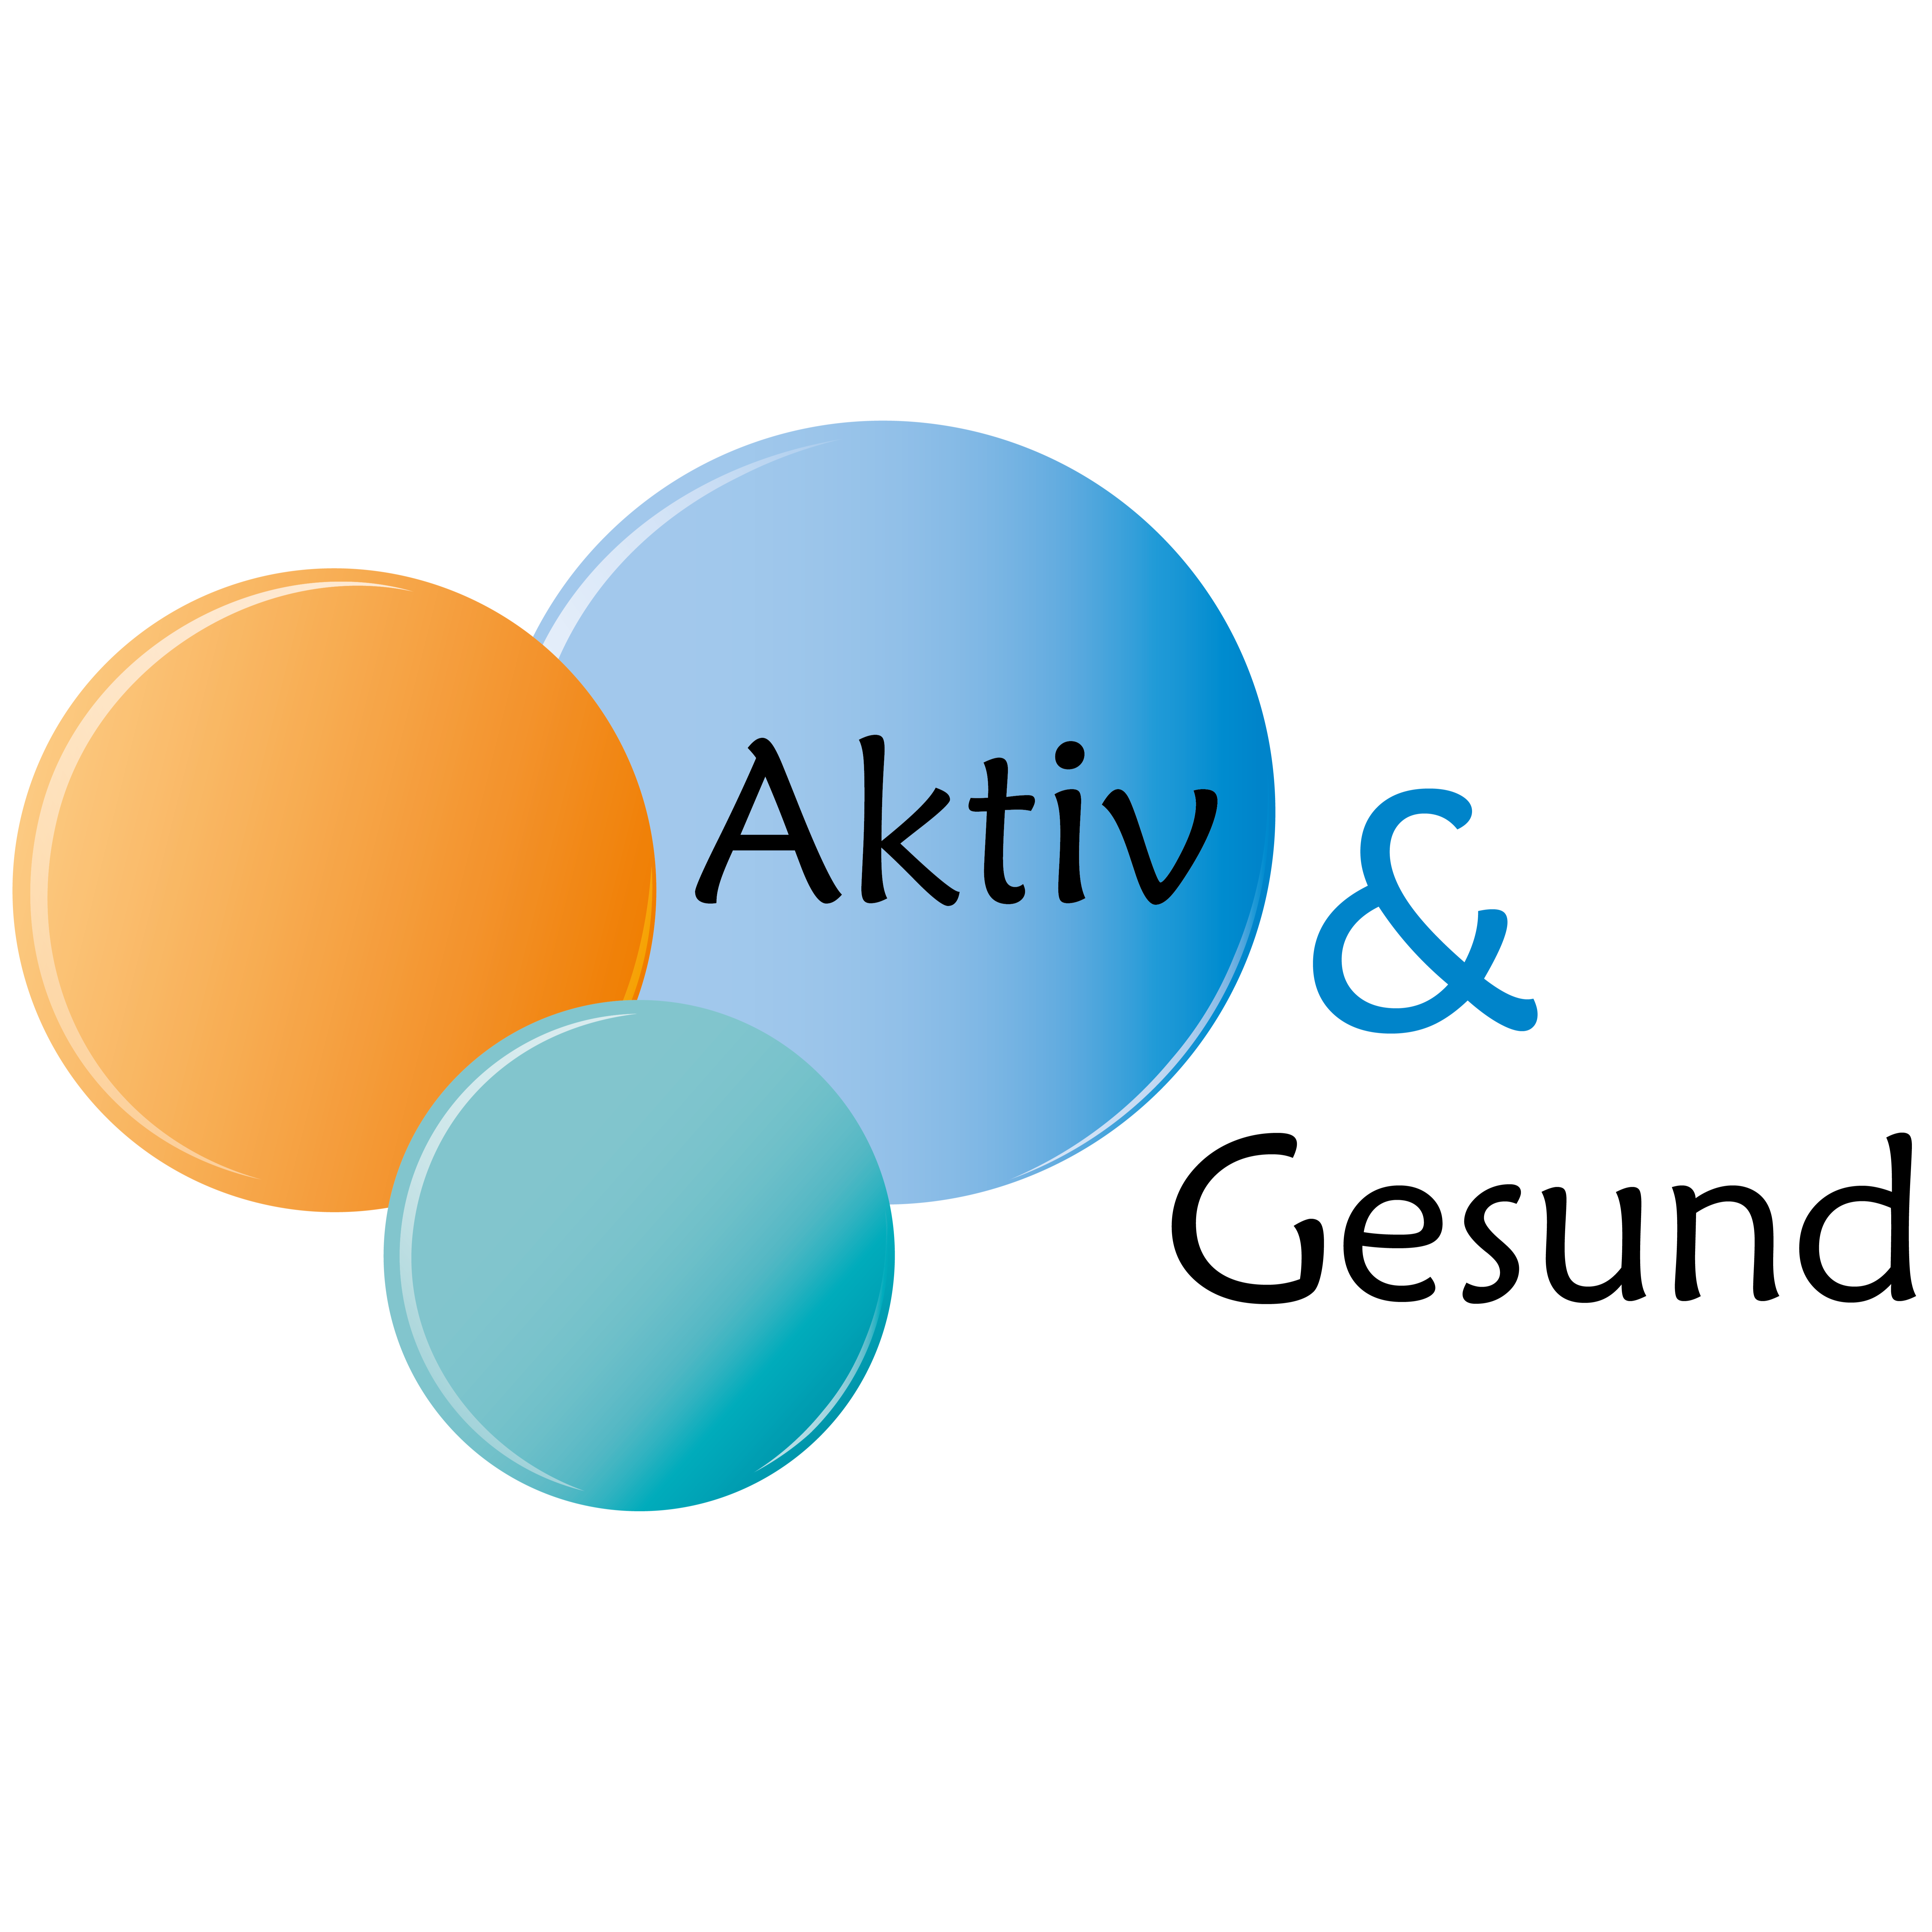 Bild zu Aktiv & Gesund GmbH & Co. KG in Warendorf